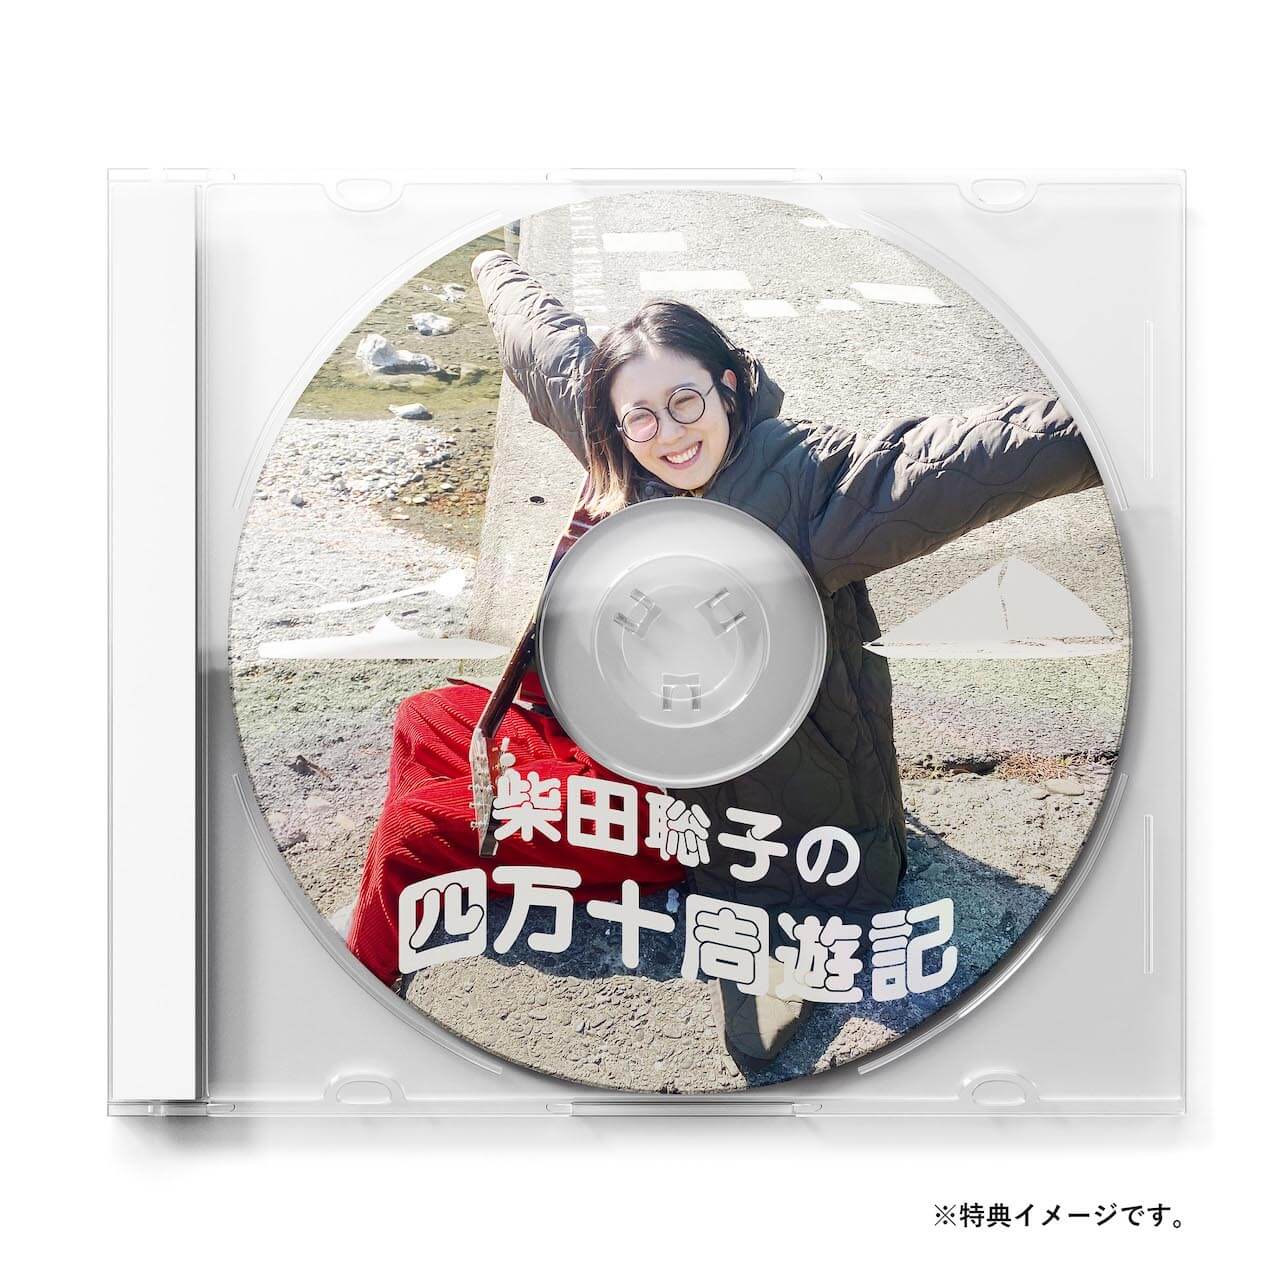 「あ〜、もう、ぼちぼち銀河だわ〜」──柴田聡子、6枚目のアルバムが5月25日発売決定 music220317-shibatasatoko-3